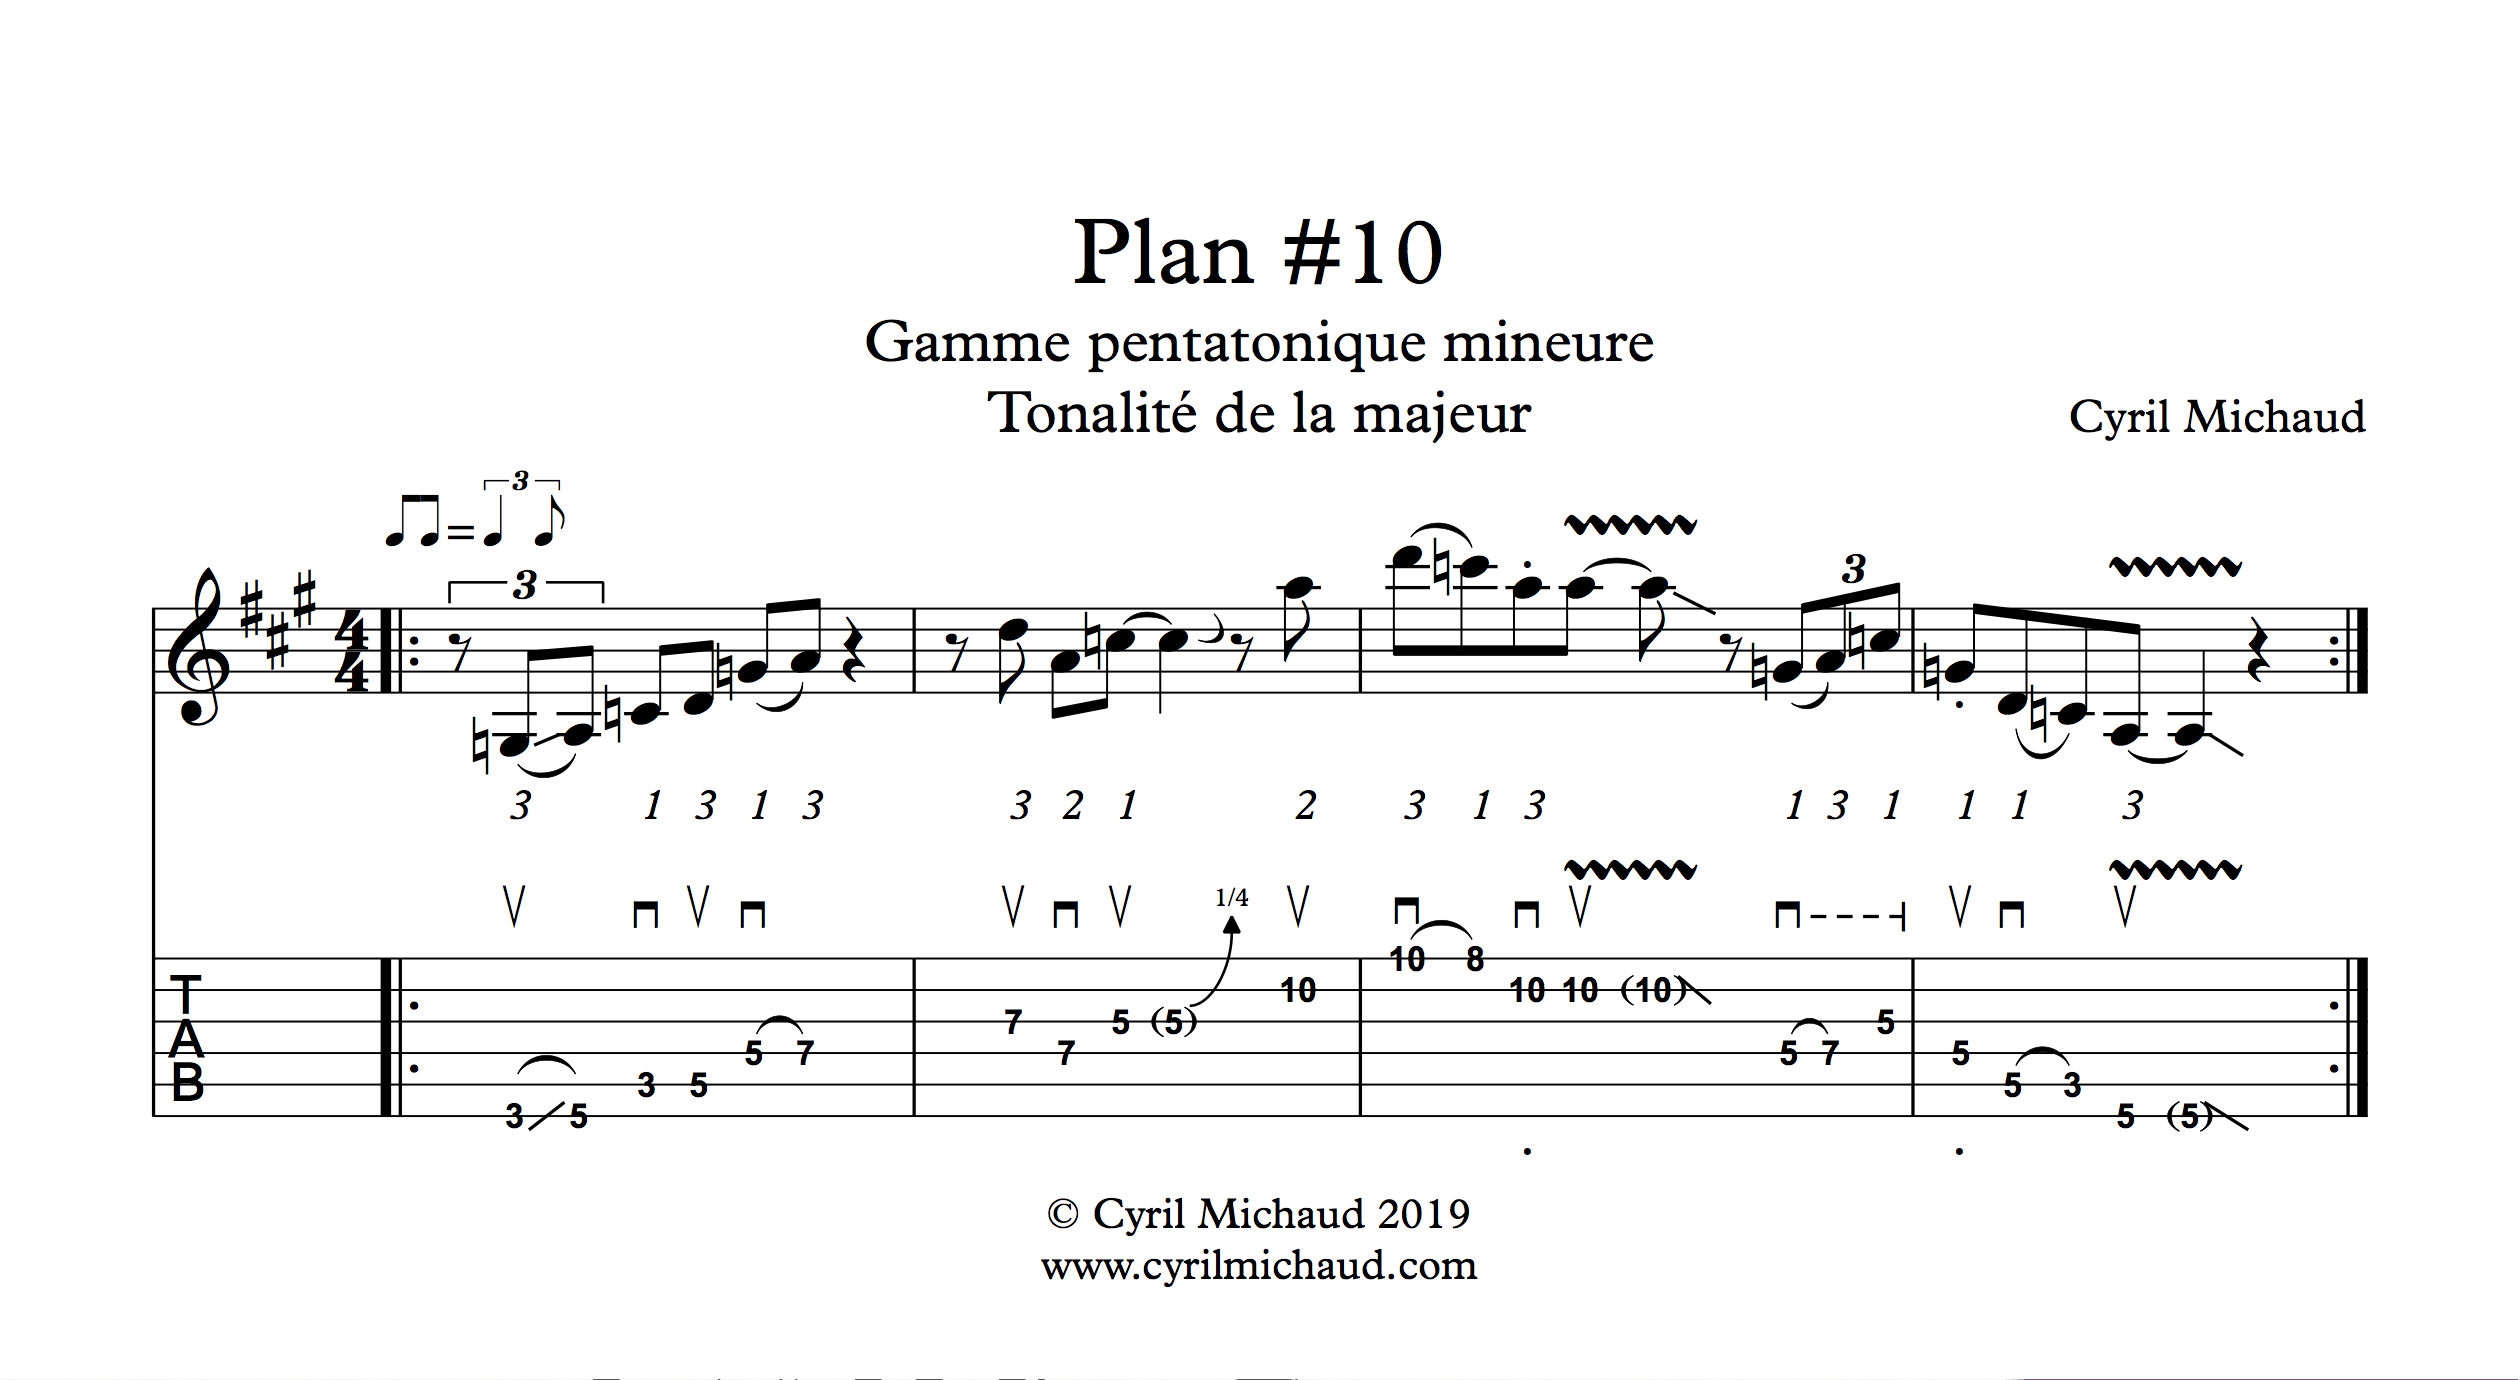 Plan blues sur la gamme pentatonique mineure (10)